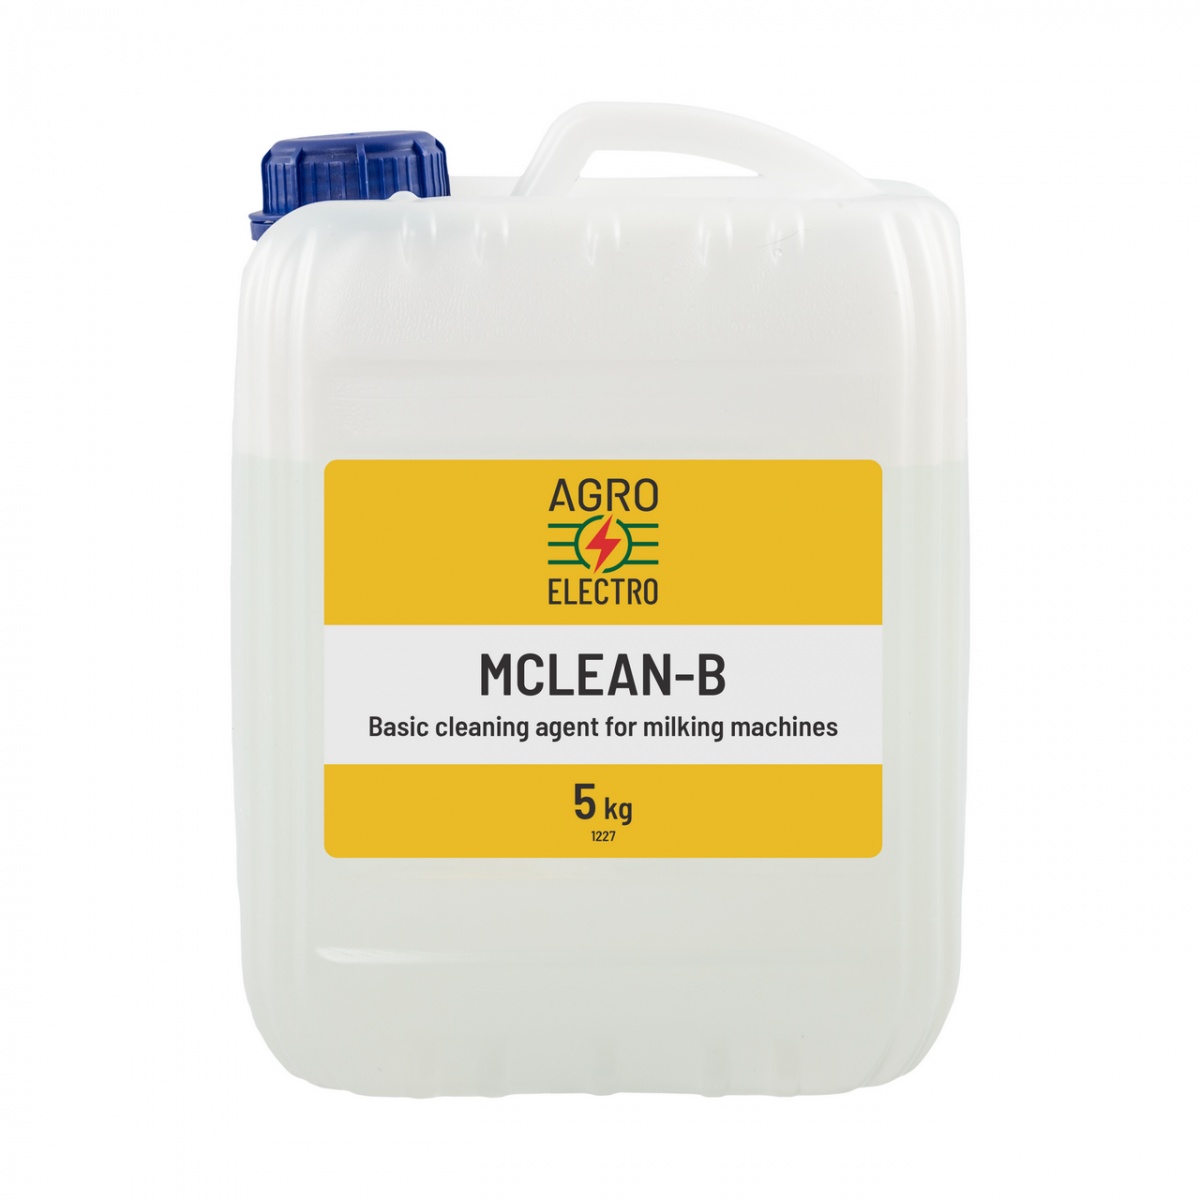 MCLEAN-B, lúgos mosószer fejőgépek tisztításához, 5 kg